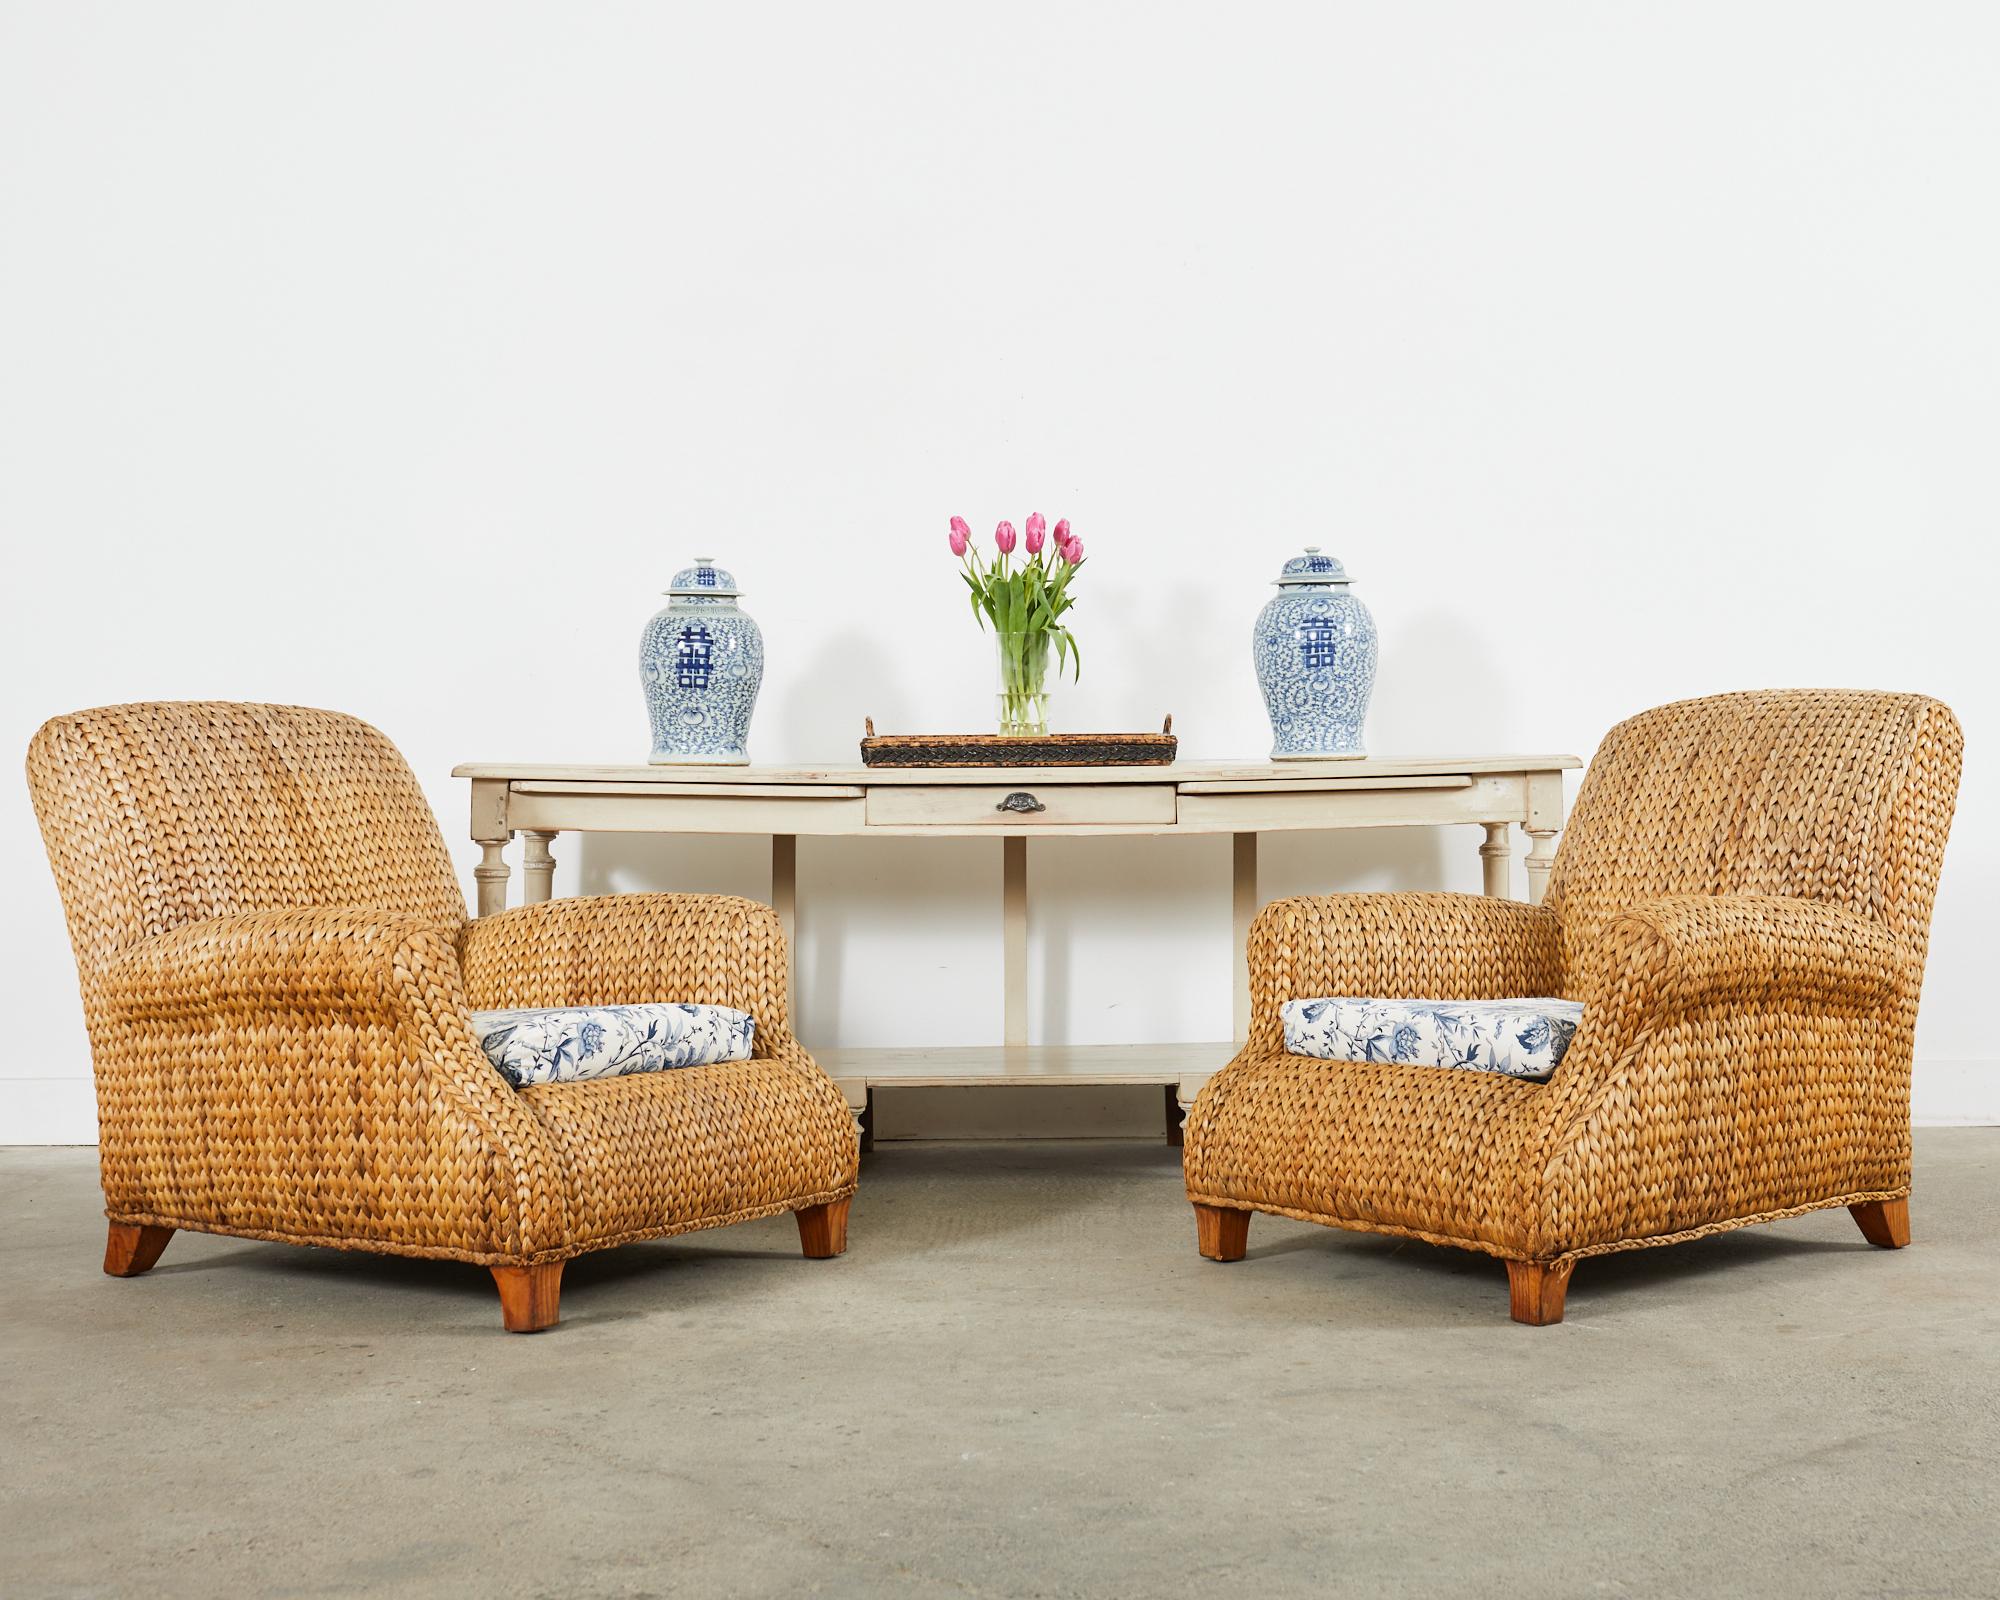 Seltenes Paar großer geflochtener Seegras- und Rattan-Loungesessel oder -sessel, entworfen von Ralph Lauren. Die Stühle verfügen über überdimensionale Rattanrahmen, die mit natürlichem Seegrasgeflecht im modernen, organischen Küstenstil verziert